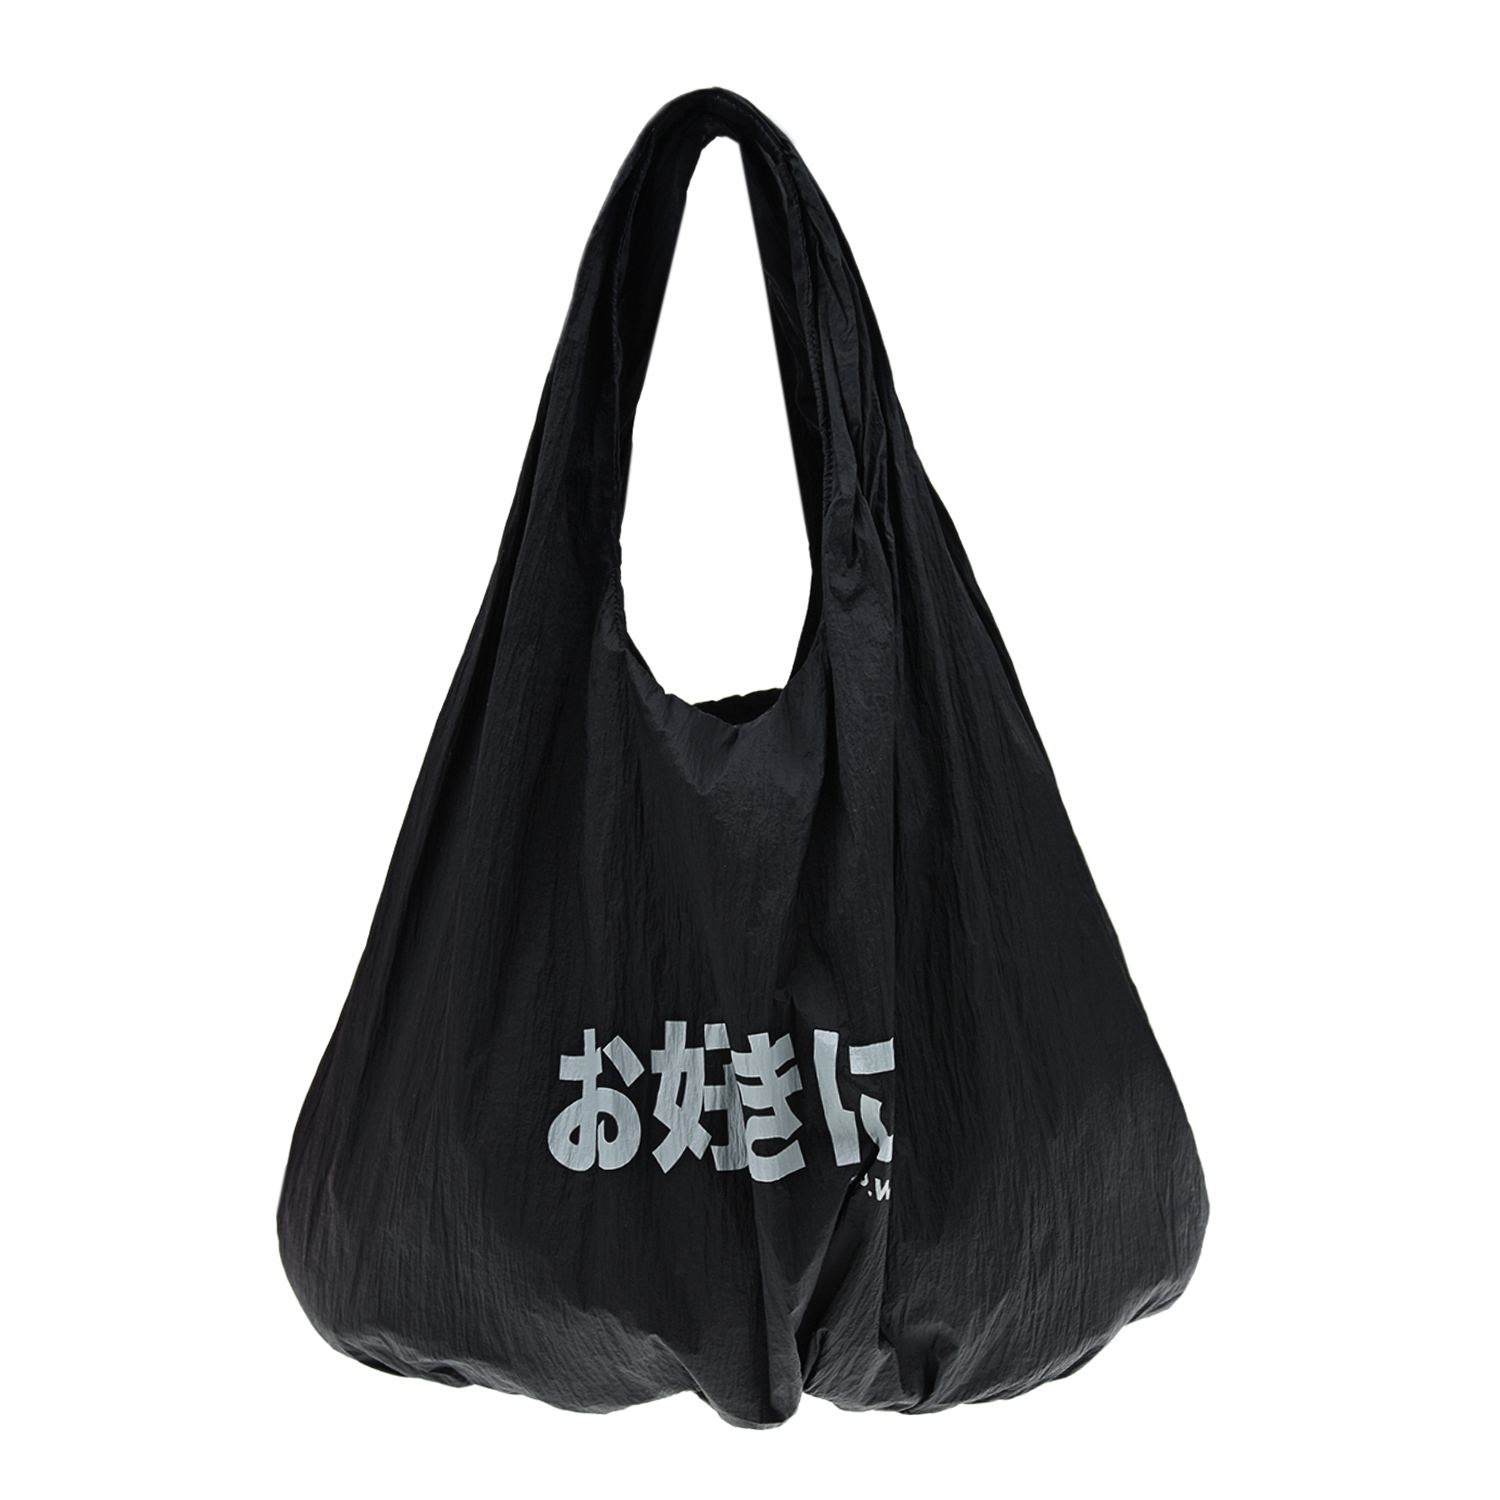 Черная сумка-мешок 5 Preview, размер unica, цвет черный